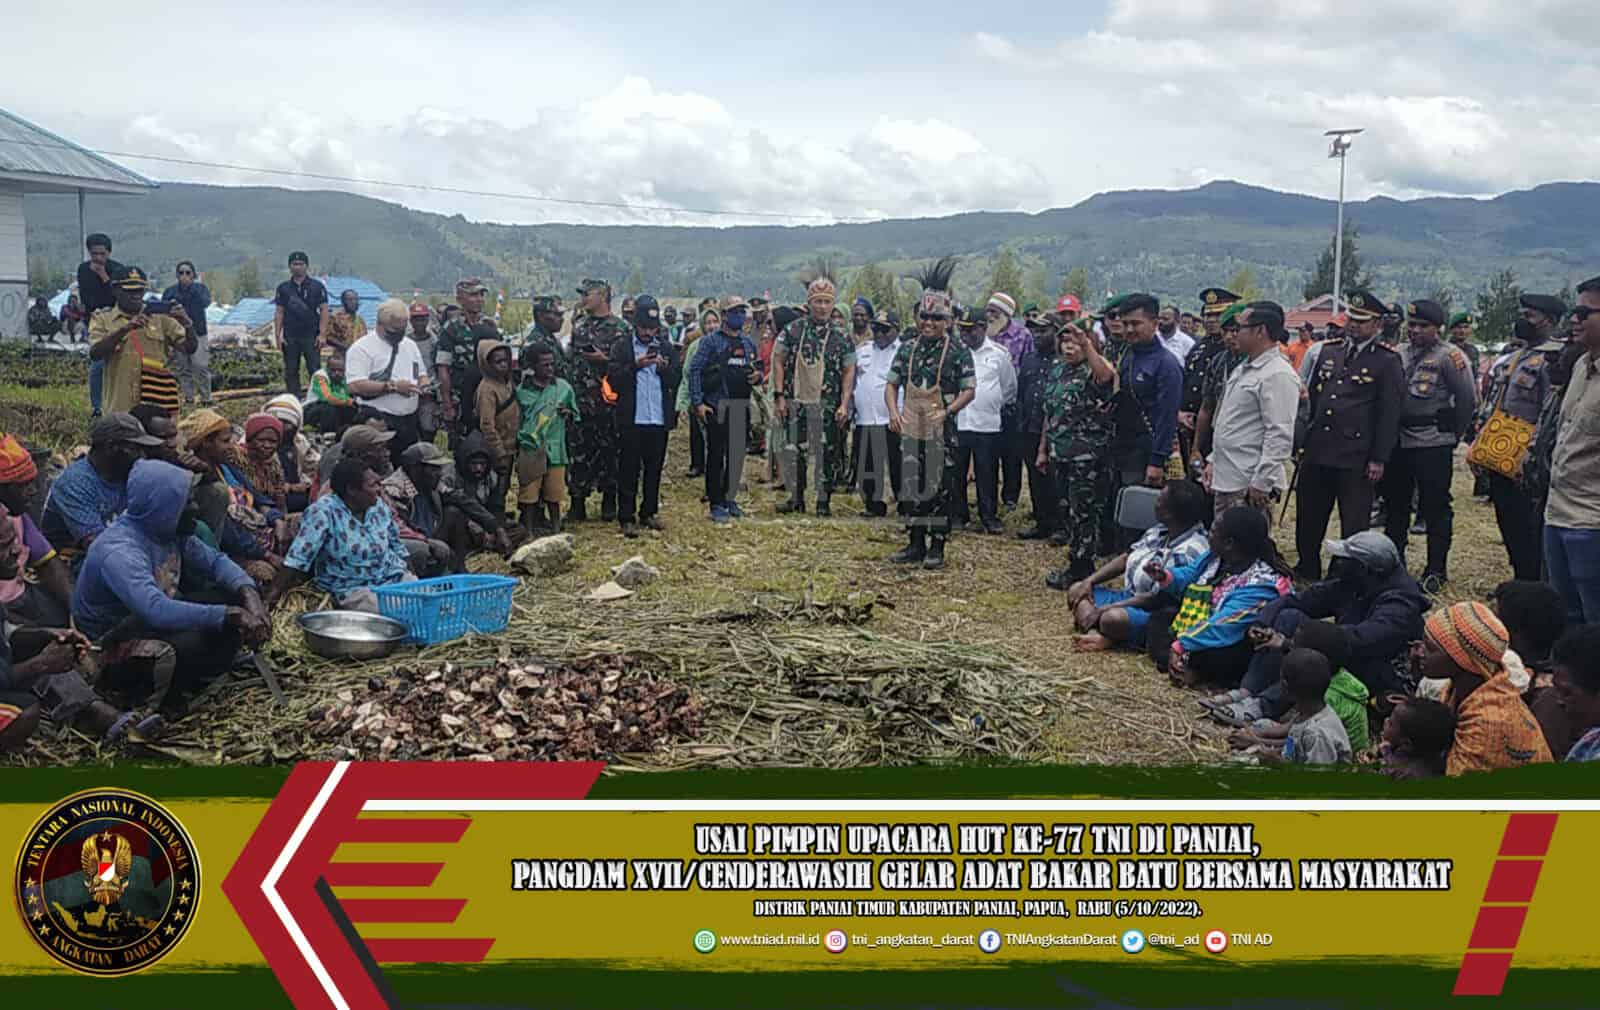 Usai Pimpin Upacara HUT Ke-77 TNI Di Paniai, Pangdam XVII/Cenderawasih Gelar Adat Bakar Batu Bersama Masyarakat